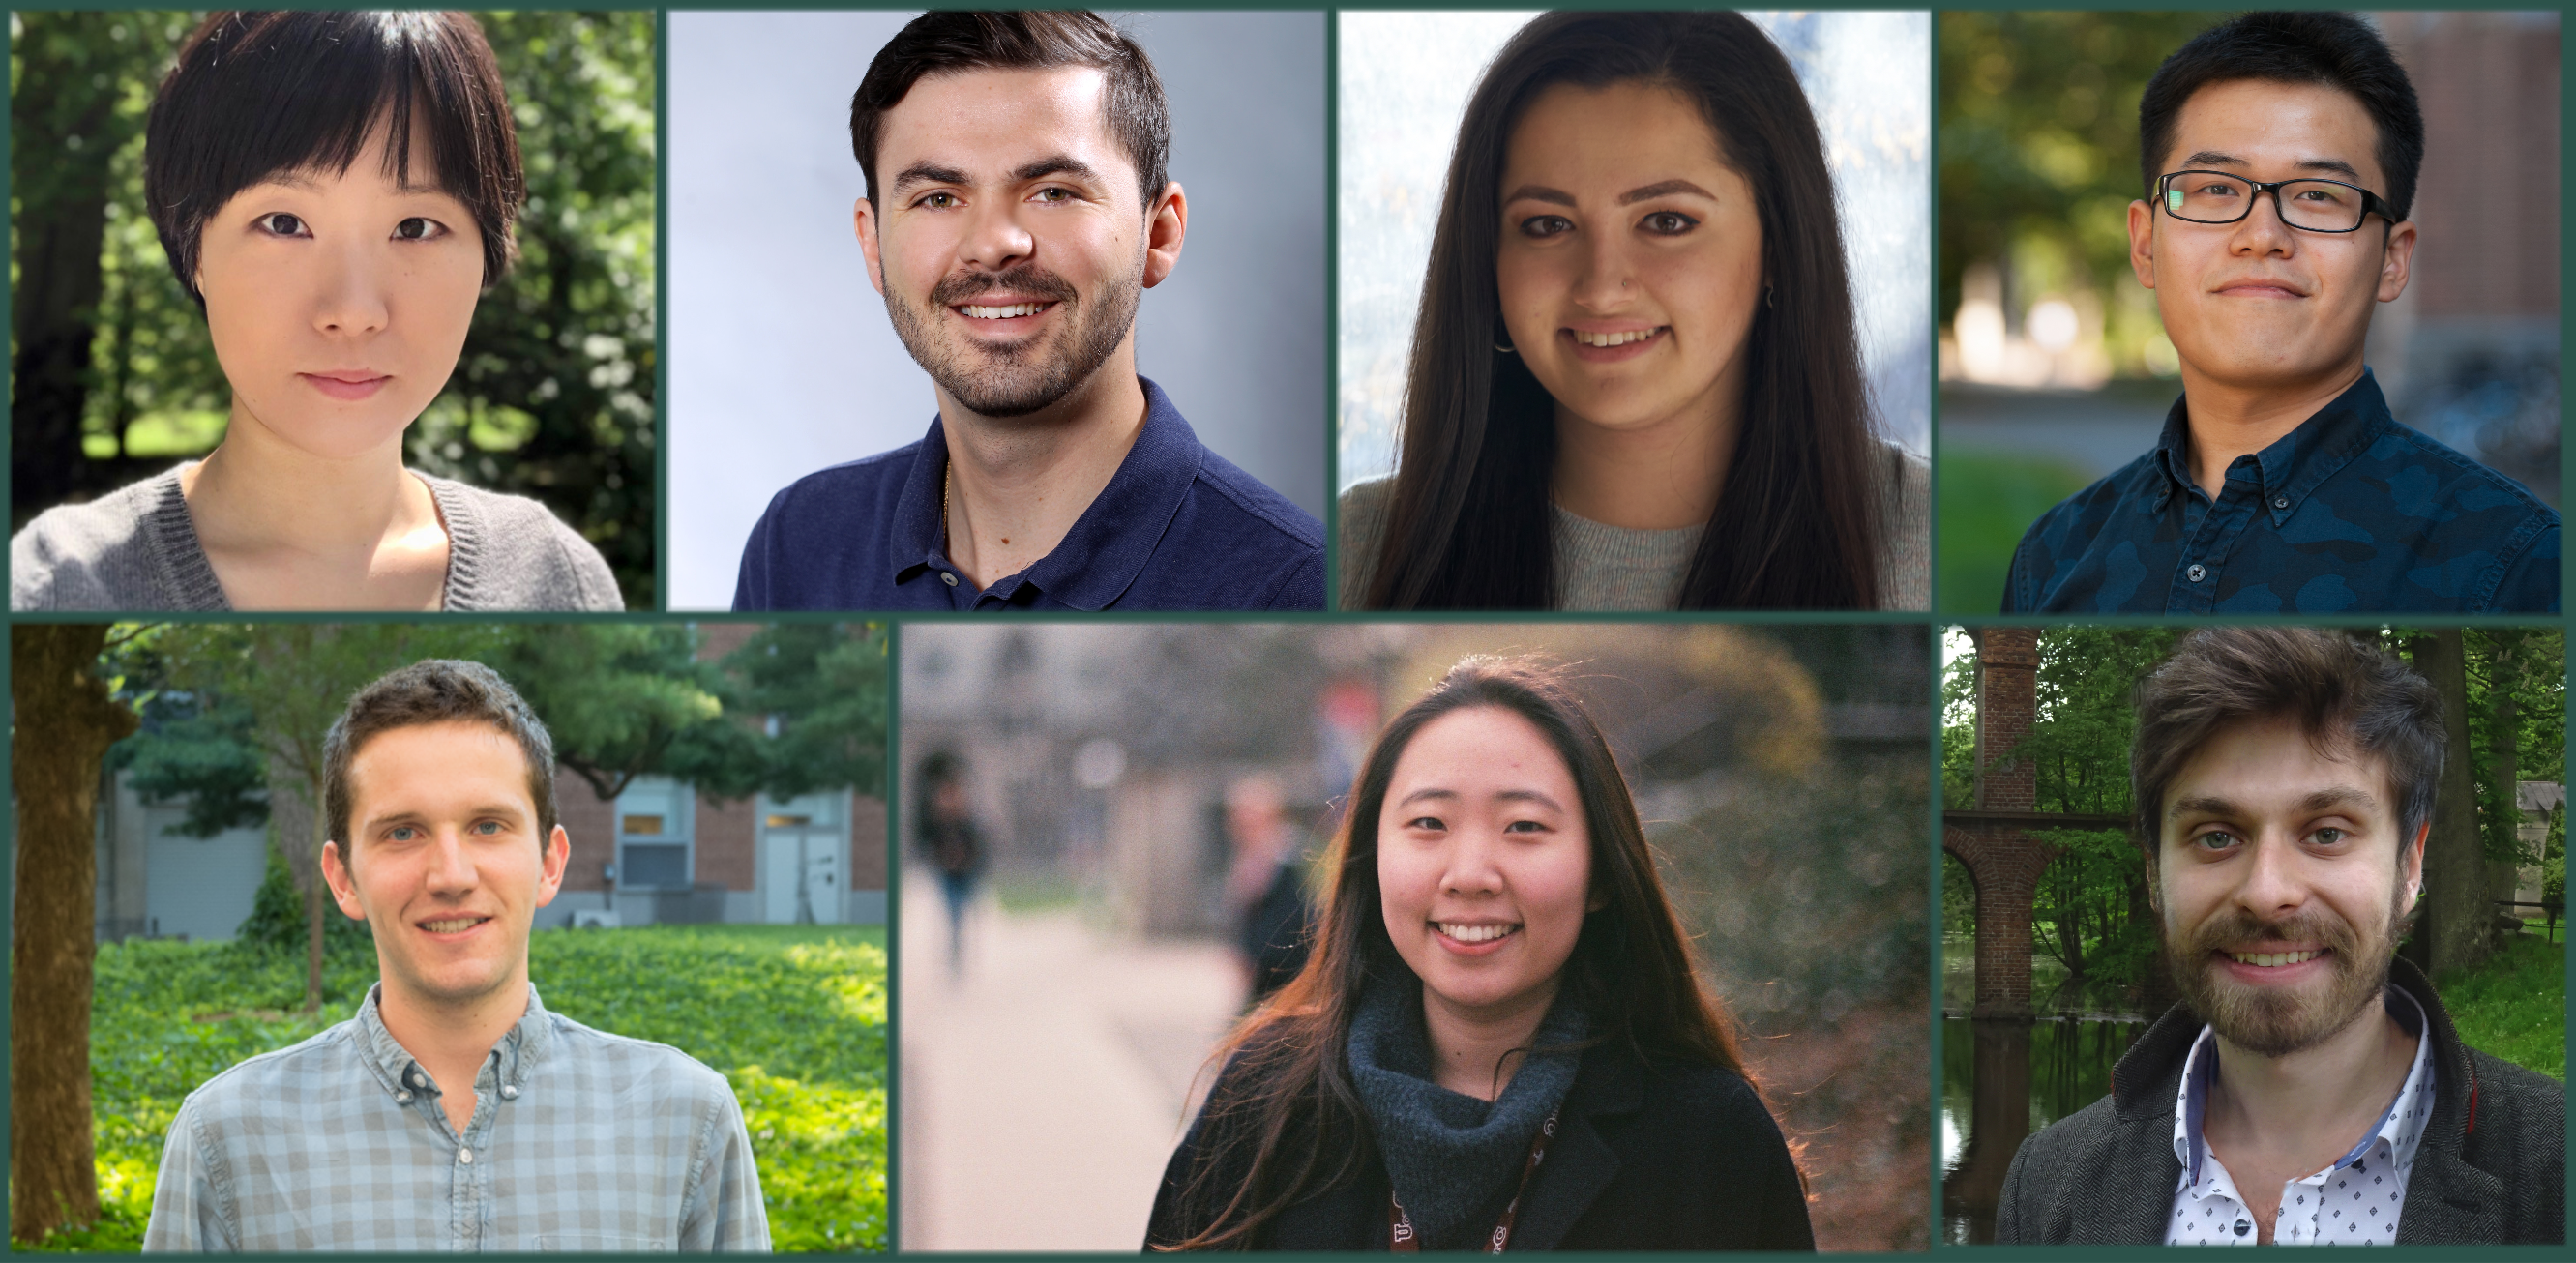 Princeton undergraduate academic prizes awarded to 7 students